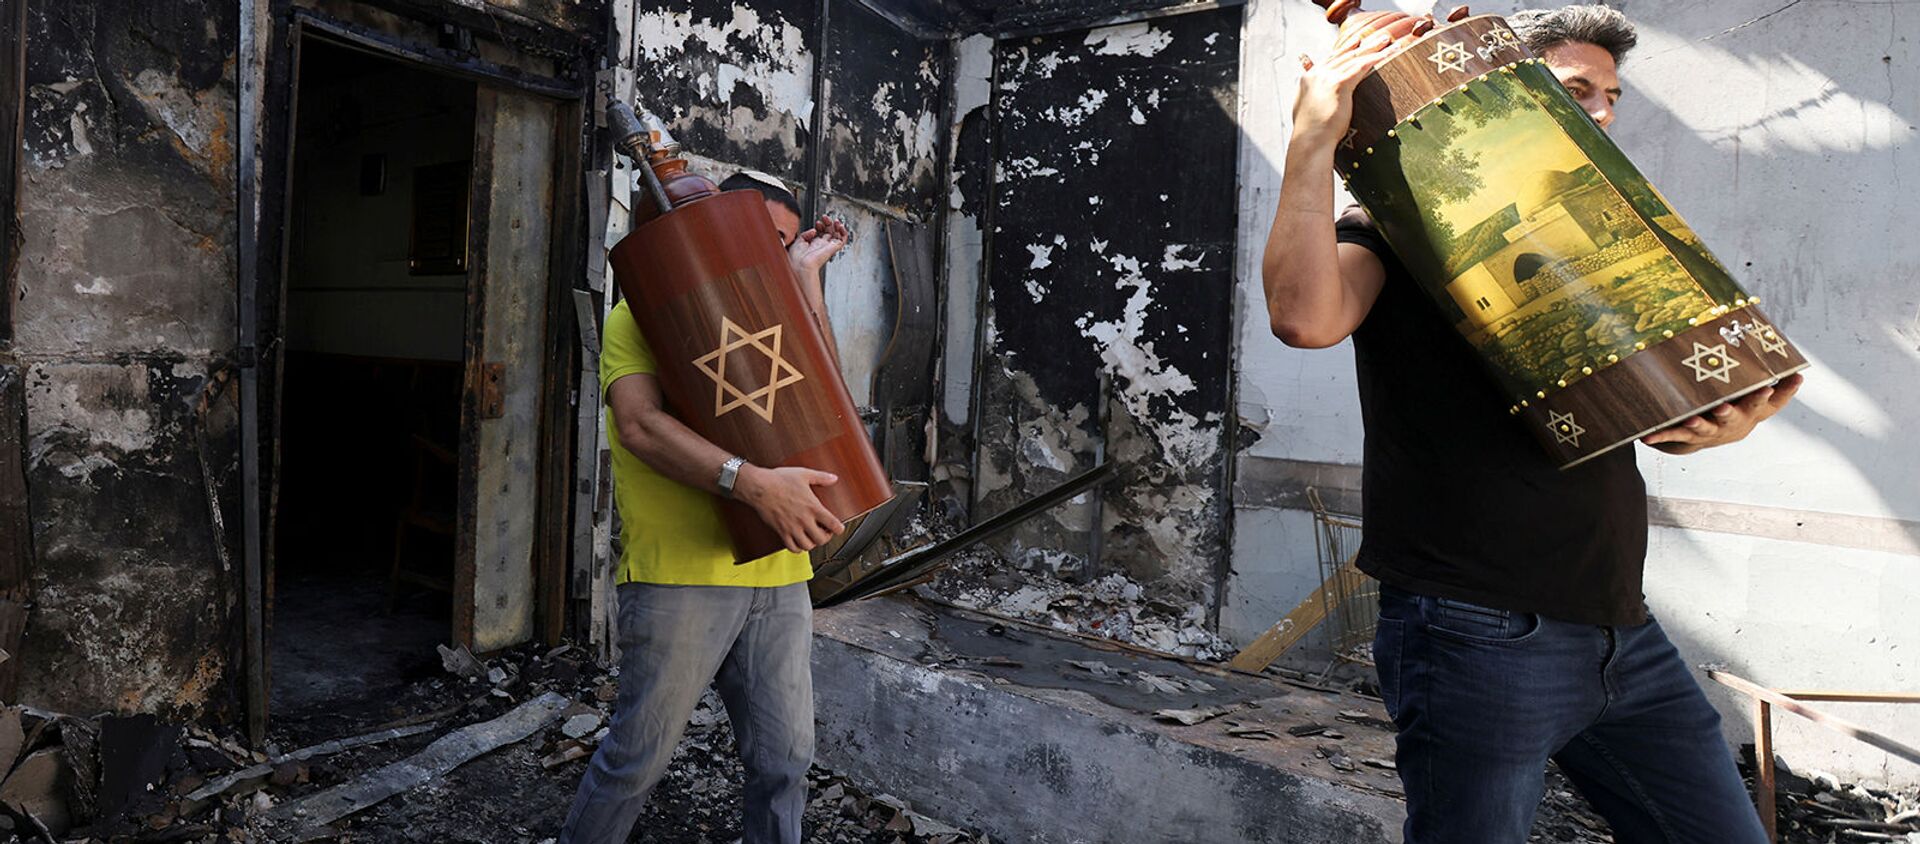 Мужчины вынимают Свитки Торы (еврейские священные писания) из синагоги, которая была сожжена во время ожесточенных столкновений в городе Лод (12 мая 2021). Израиль - Sputnik Արմենիա, 1920, 16.05.2021